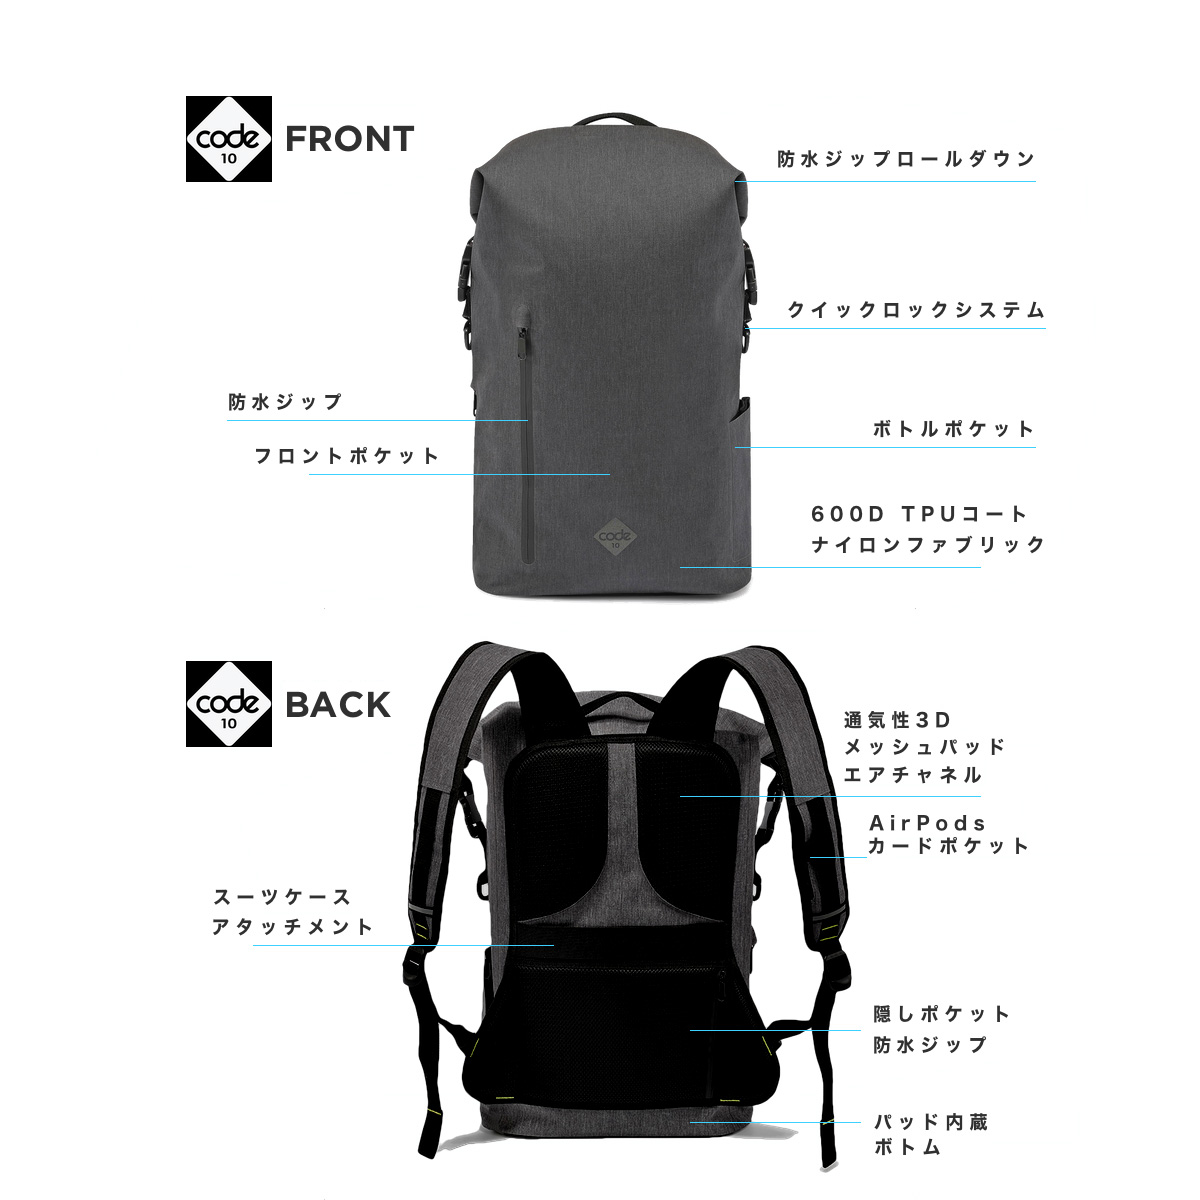 送料無料】Code10 Backpack - TokyoTool x MP2L